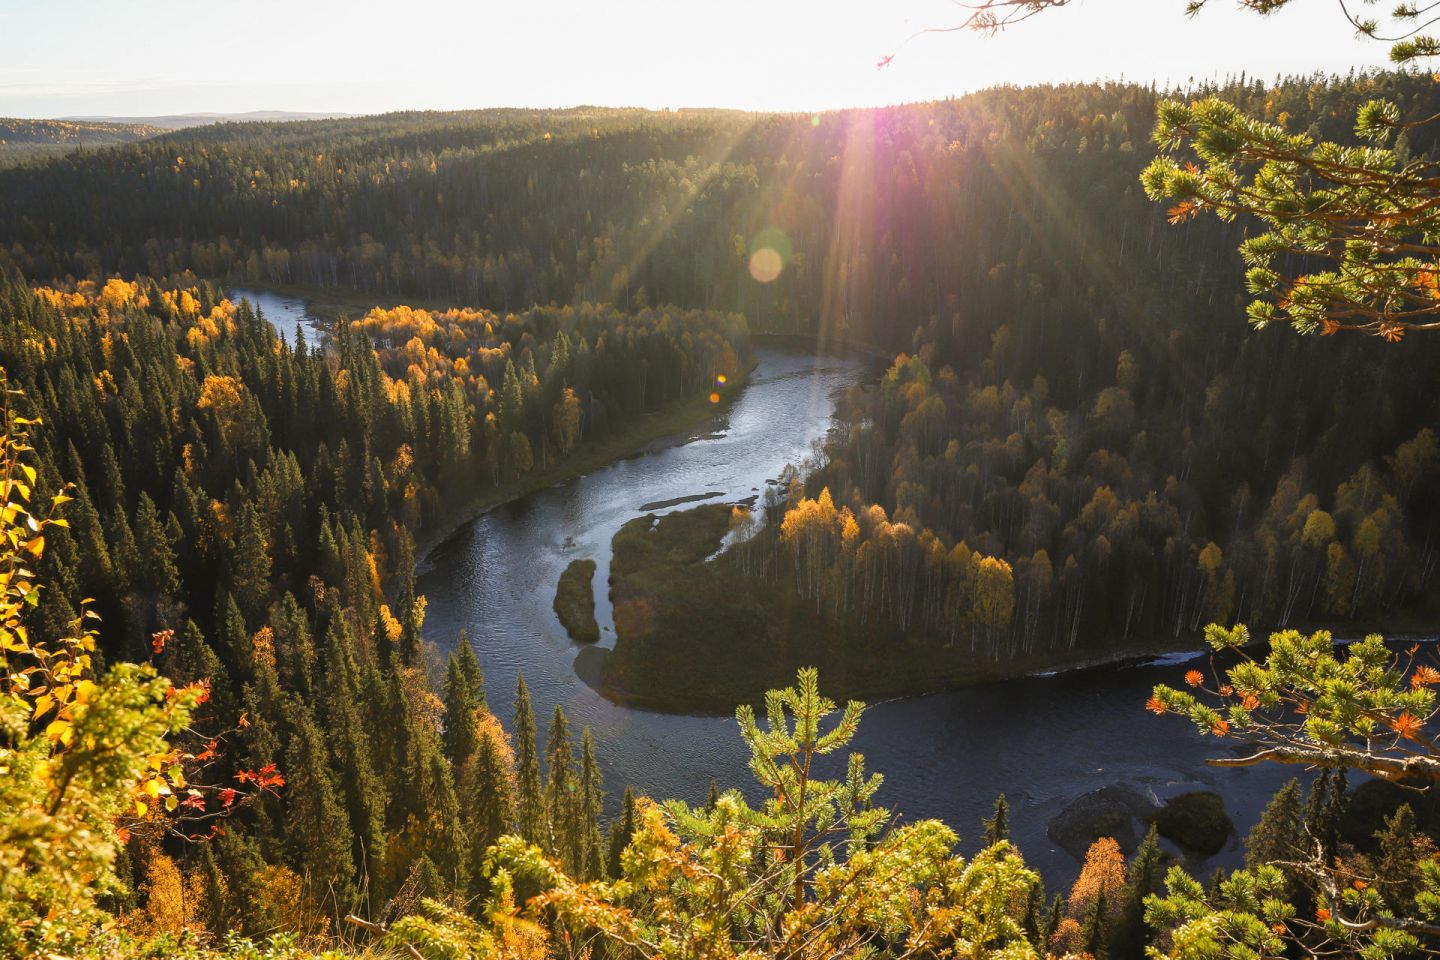 Paahkana overlook from Lapland, Europe's last wilderness